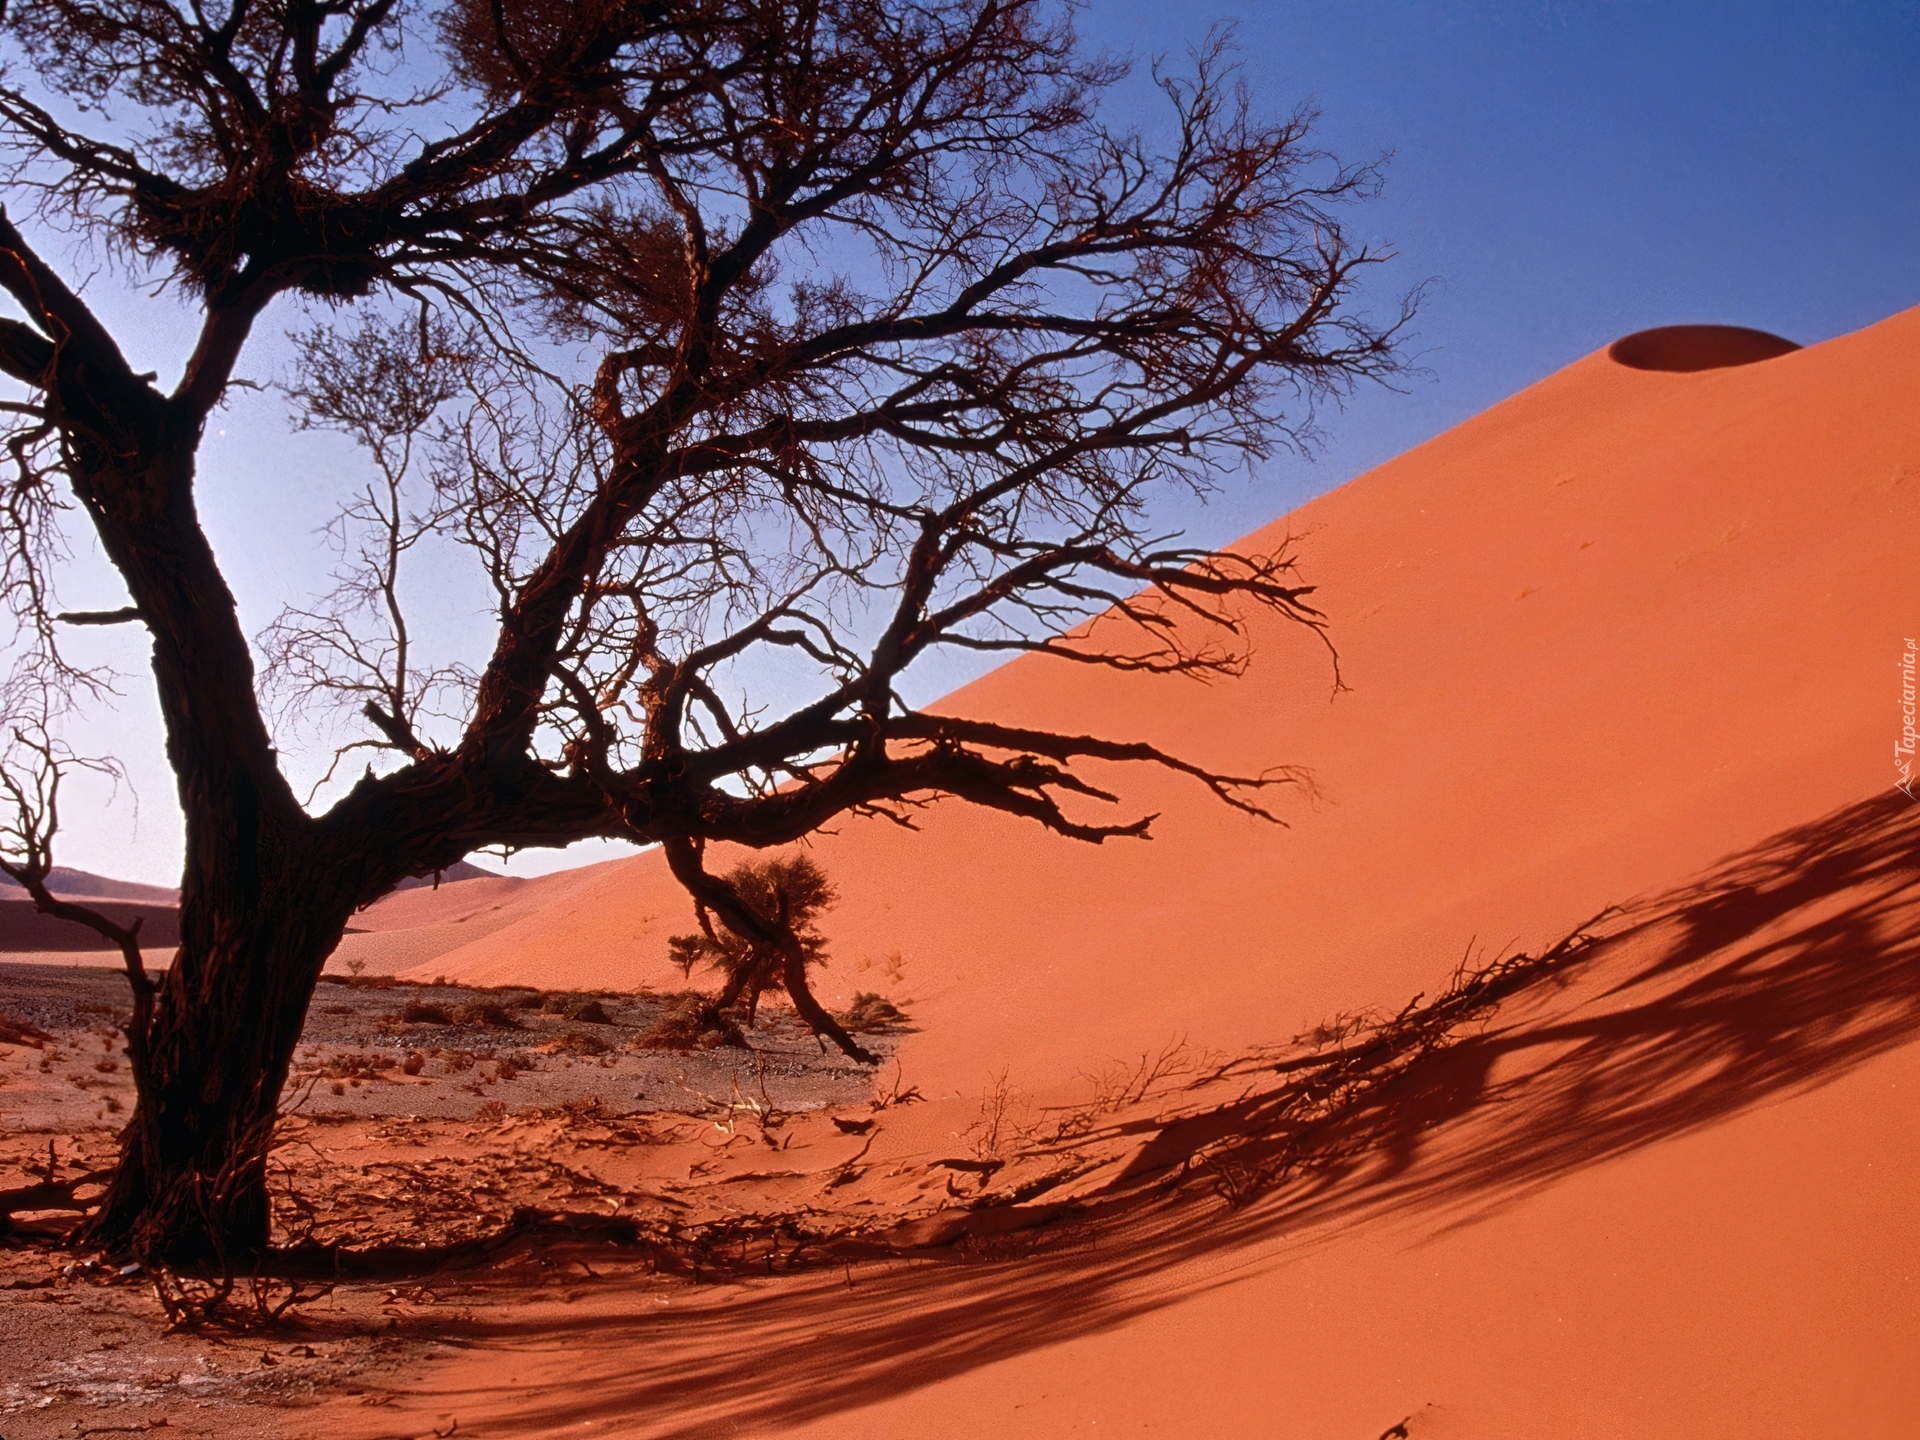 Неживая природа в пустыне